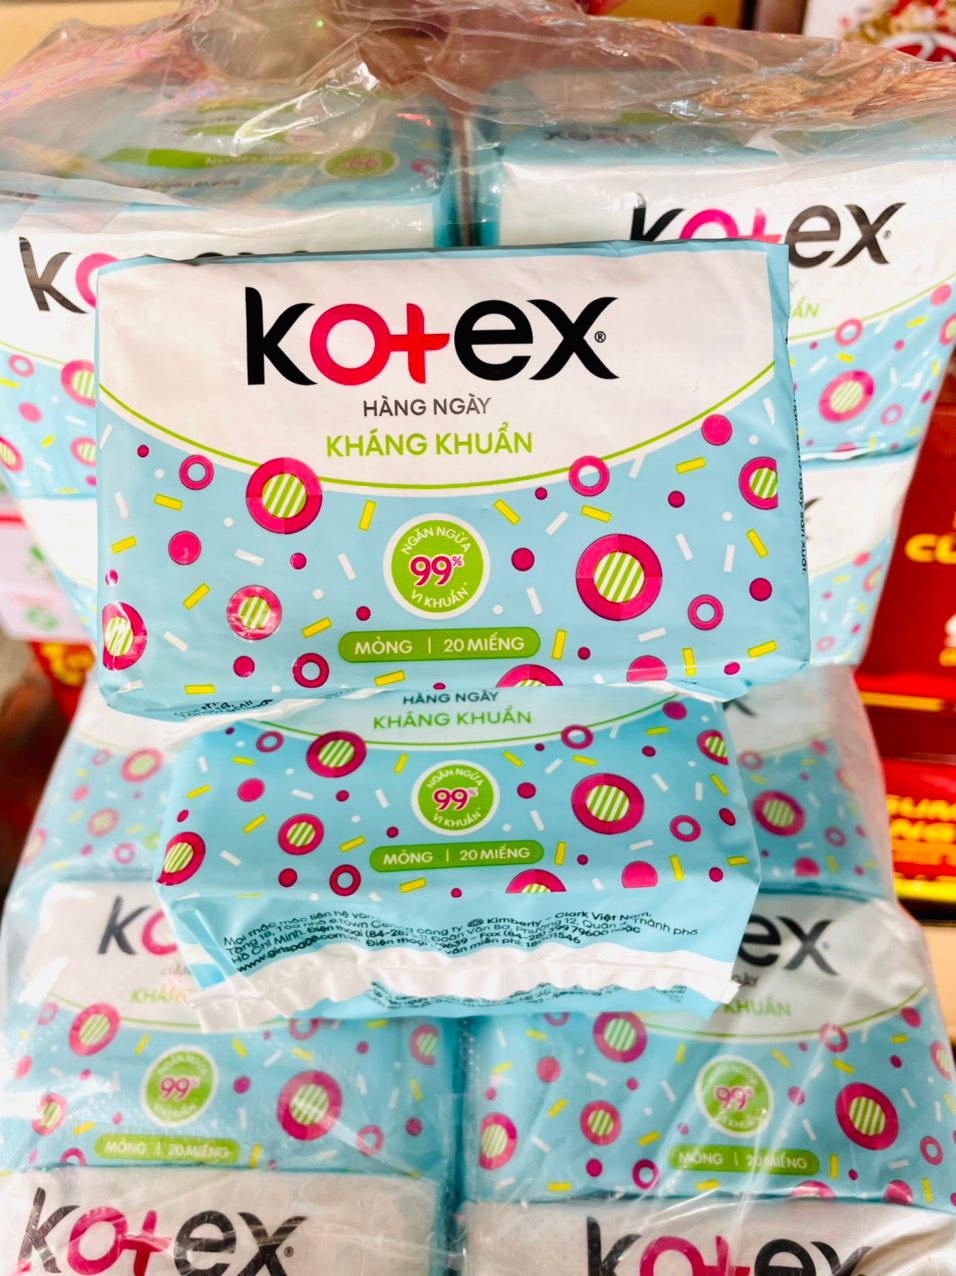 2 Gói Băng vệ sinh Hàng Ngày Kotex siêu mềm kháng khuẩn 99%  2 x 20 miếng